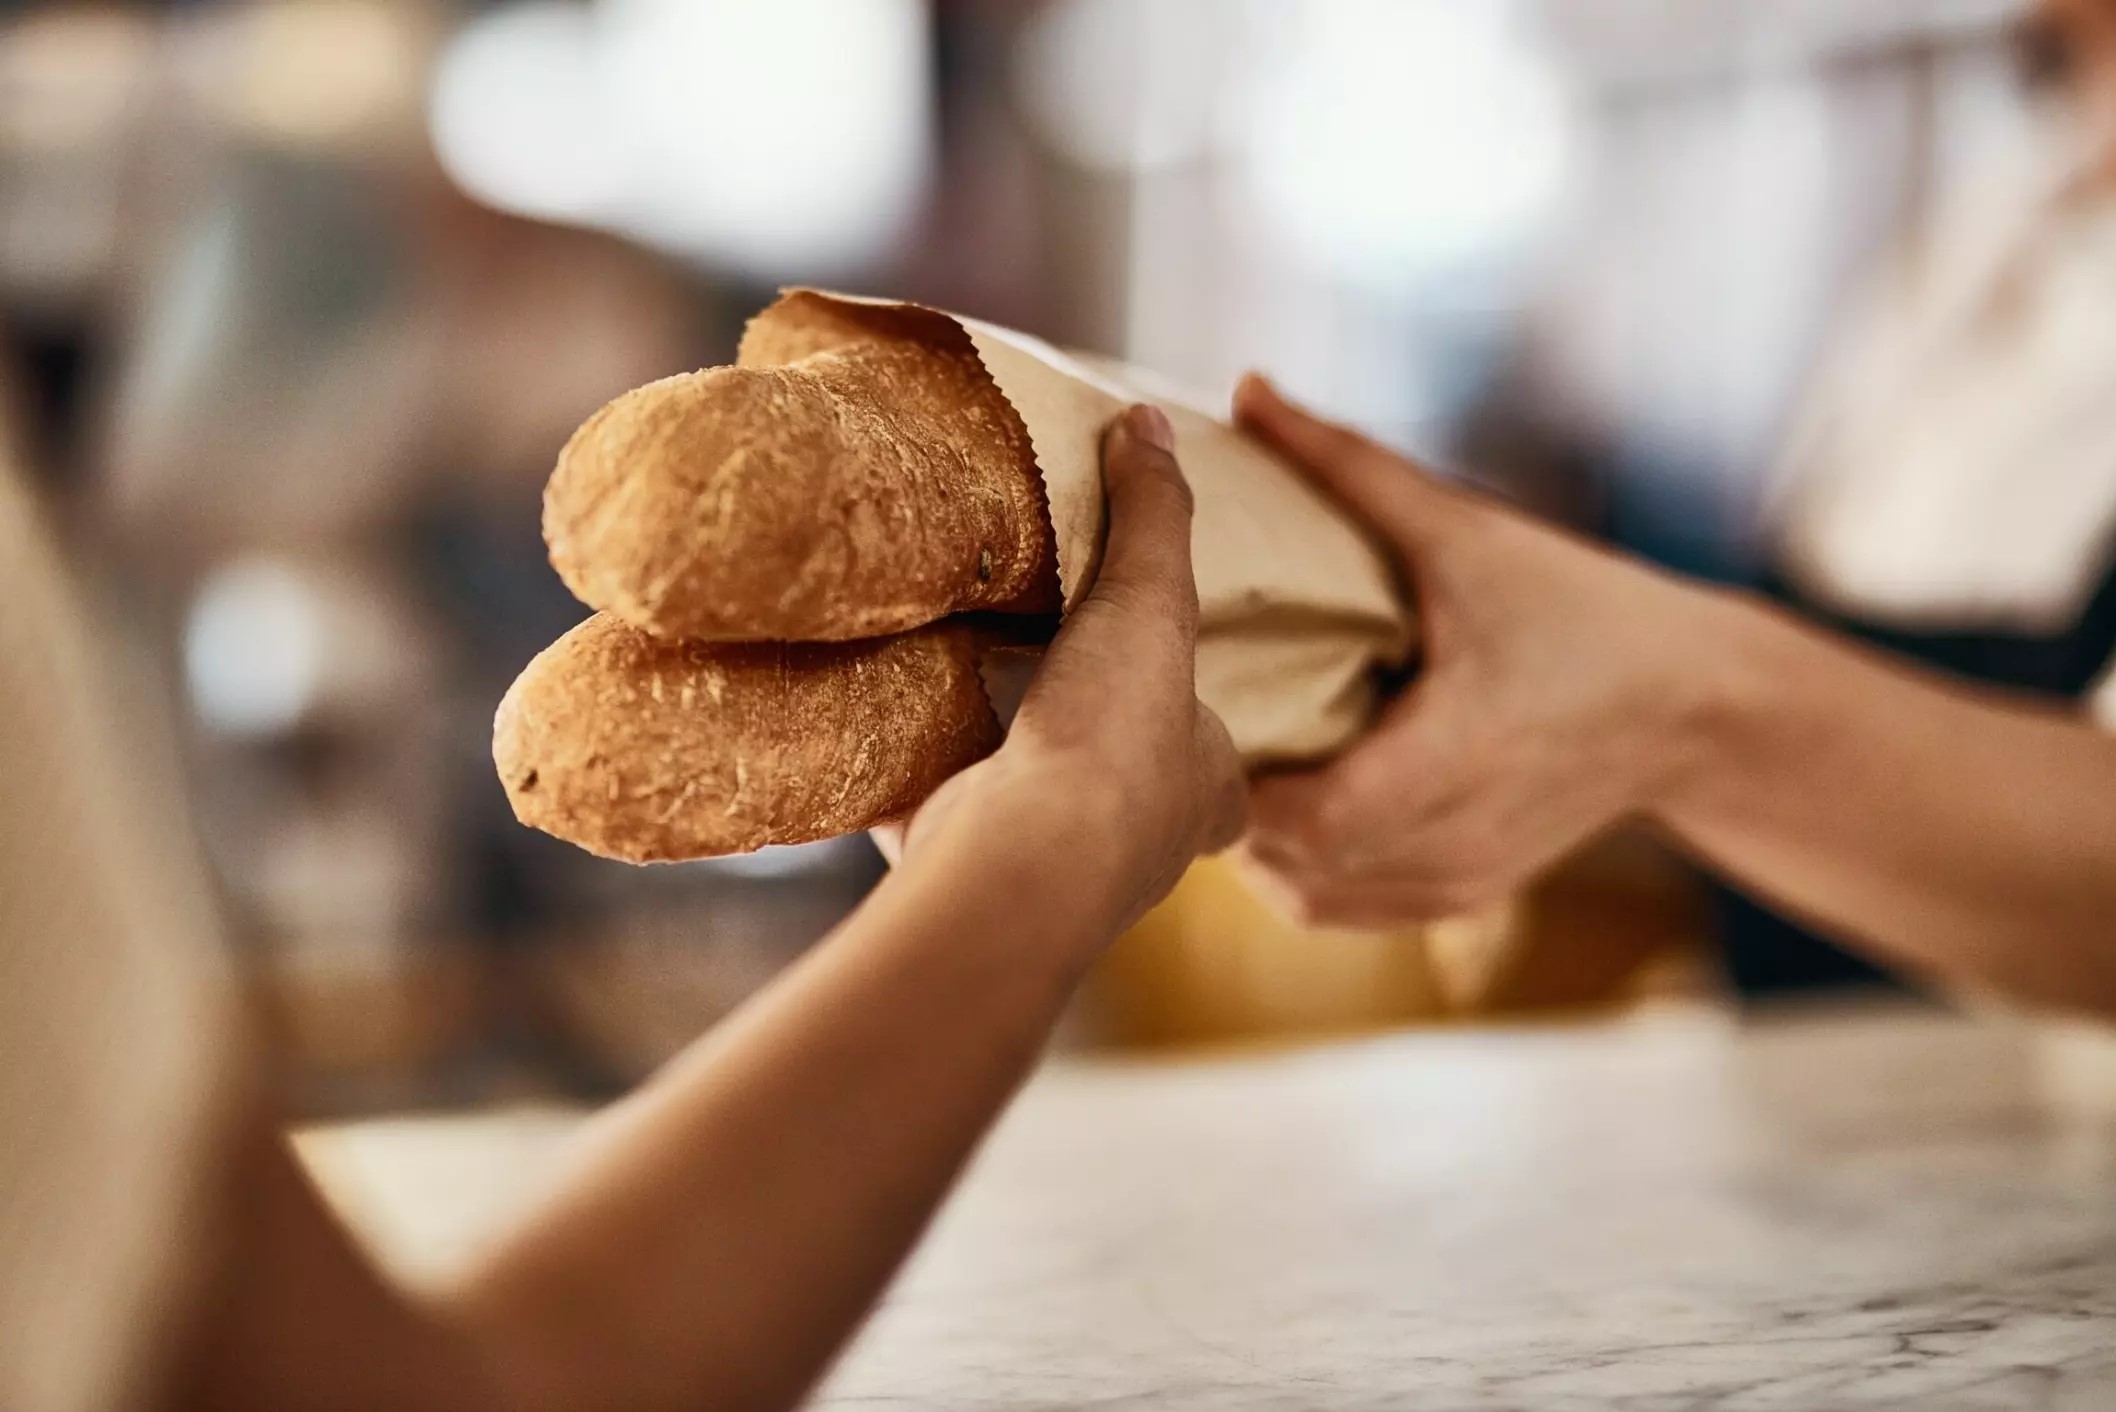 Những người sành ăn sẽ nhận ra một chiếc bánh mì baguette ngon lành được làm thủ công nhờ lớp vỏ giòn rụm và phần ruột bánh như tổ ong mềm dai.  Ảnh: Yuri A/Shutterstock/ Connexionfrance 